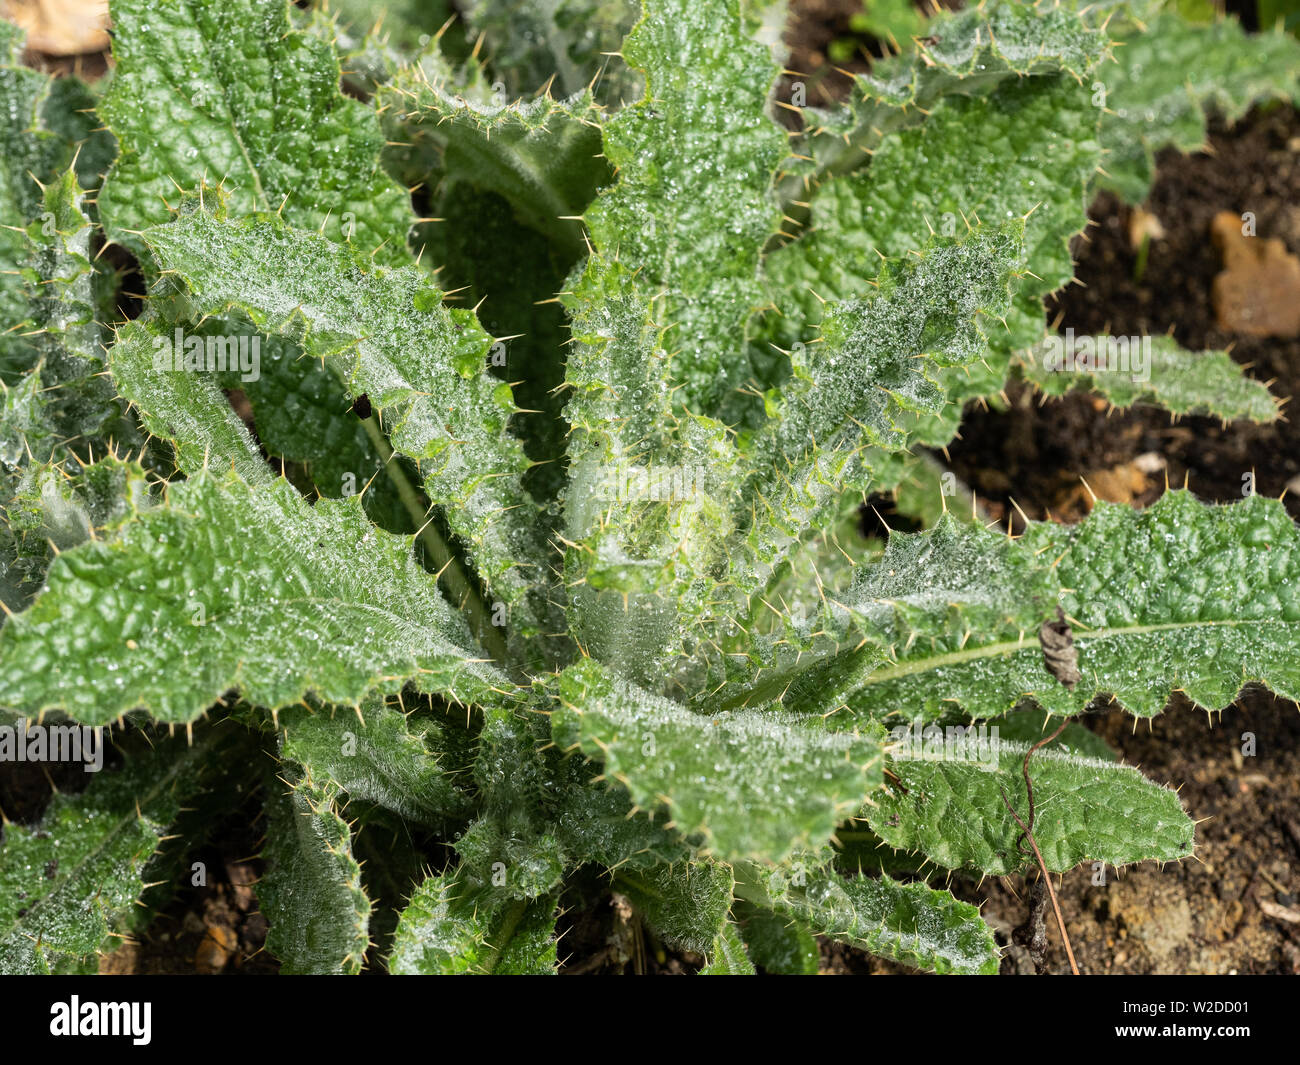 A close up of the grey green spiny foliage of Berkheya purpurea Stock Photo